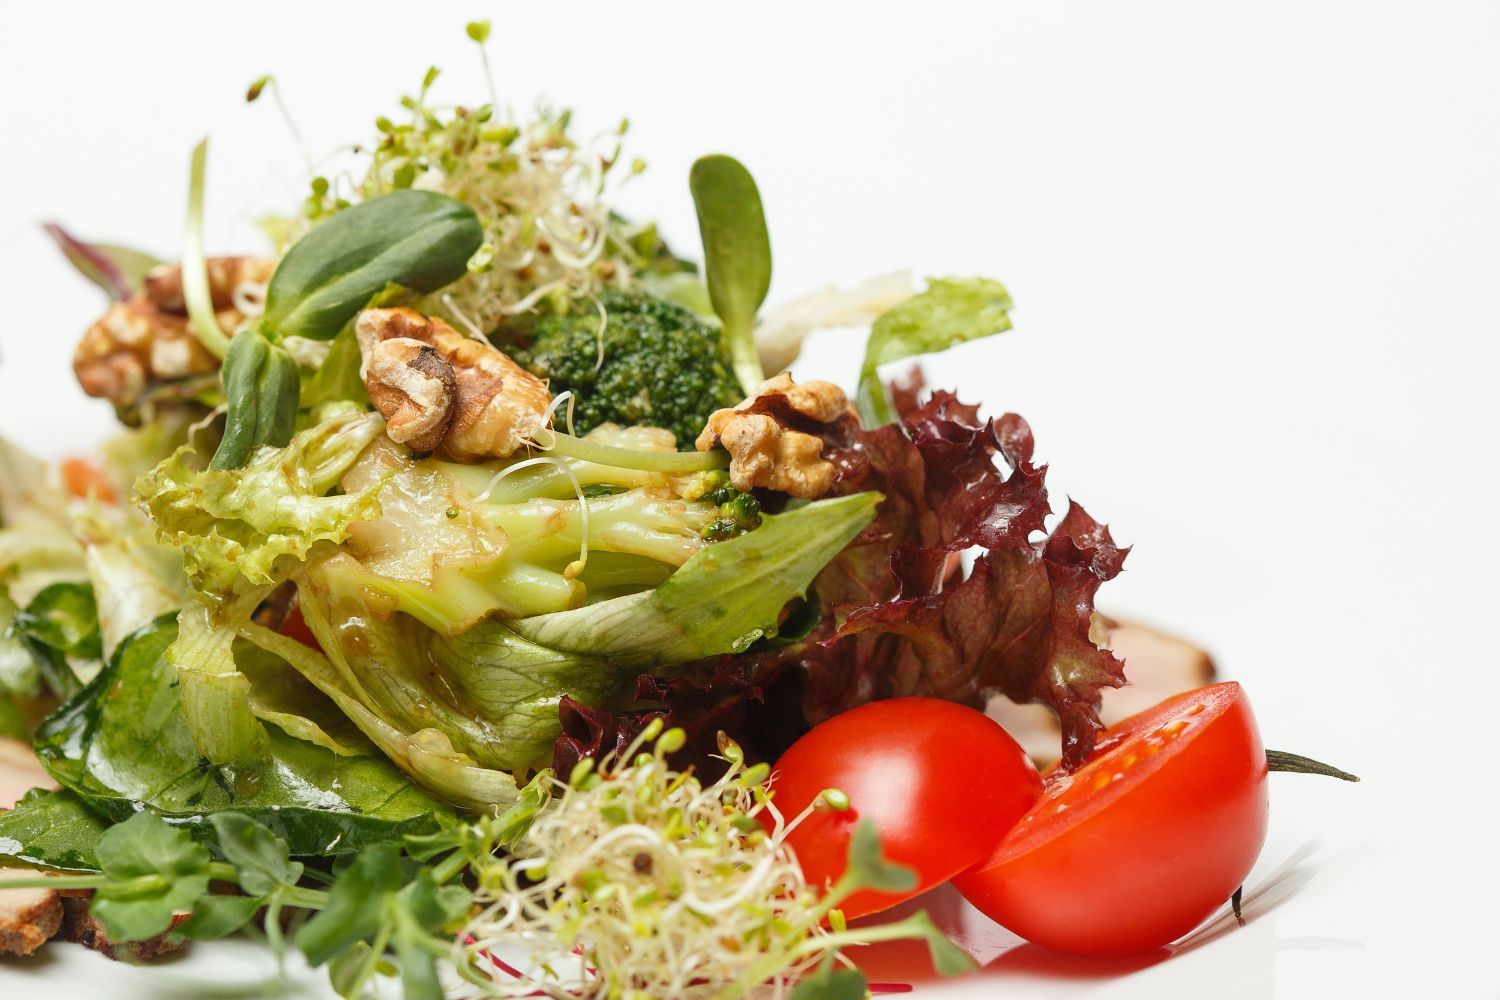 Salat mit Alfalfa-Sprossen: Knackig frisch und voller Geschmack